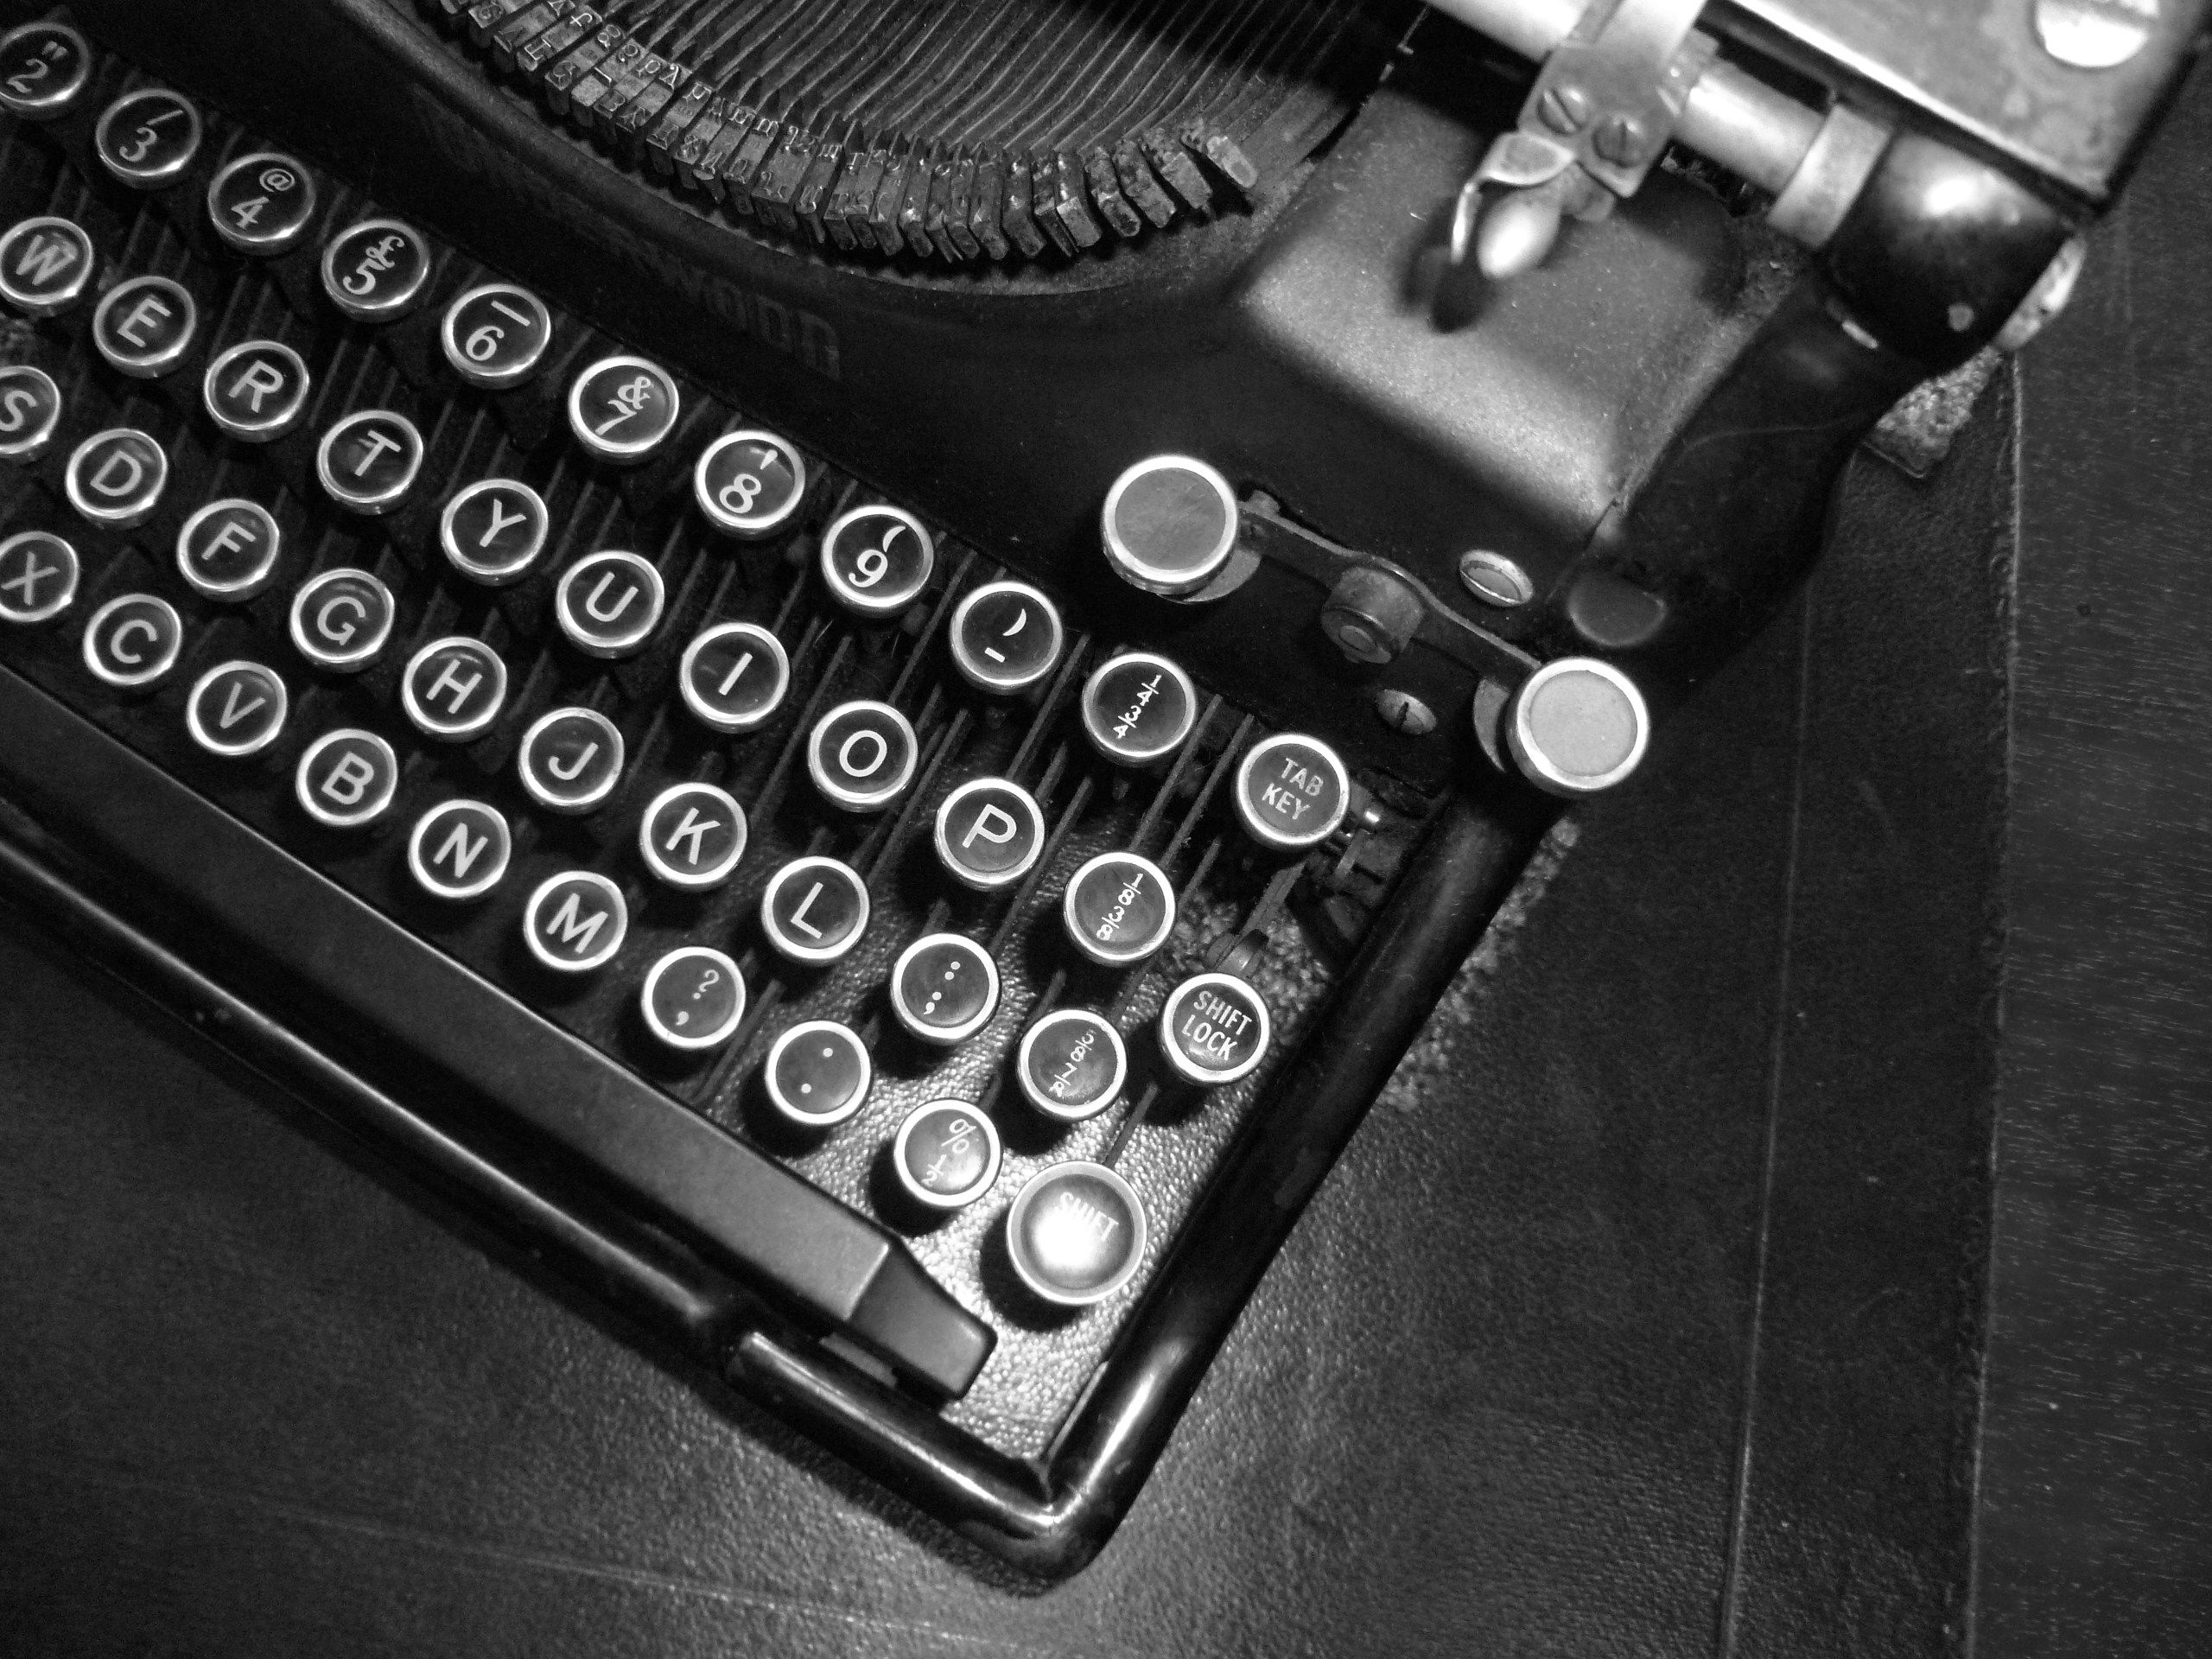 vintage typewriter | Typewriter Keys and Scrabble Tiles ...